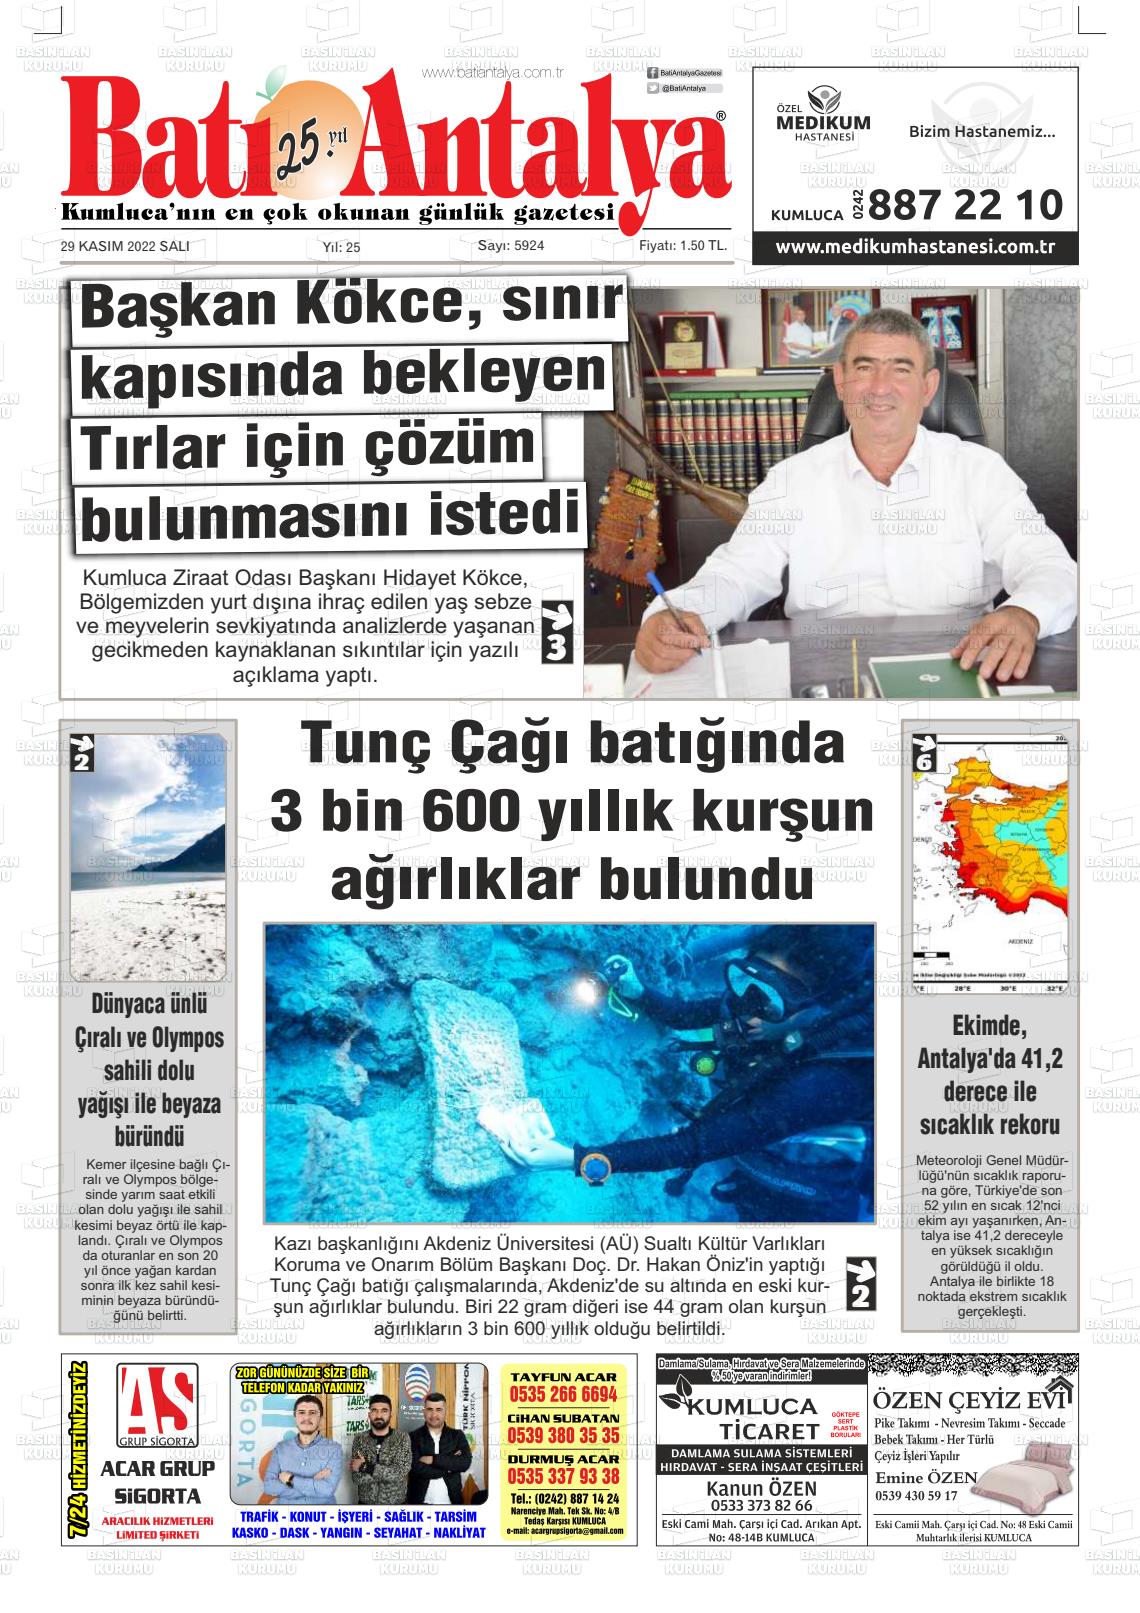 29 Kasım 2022 Batı Antalya Gazete Manşeti